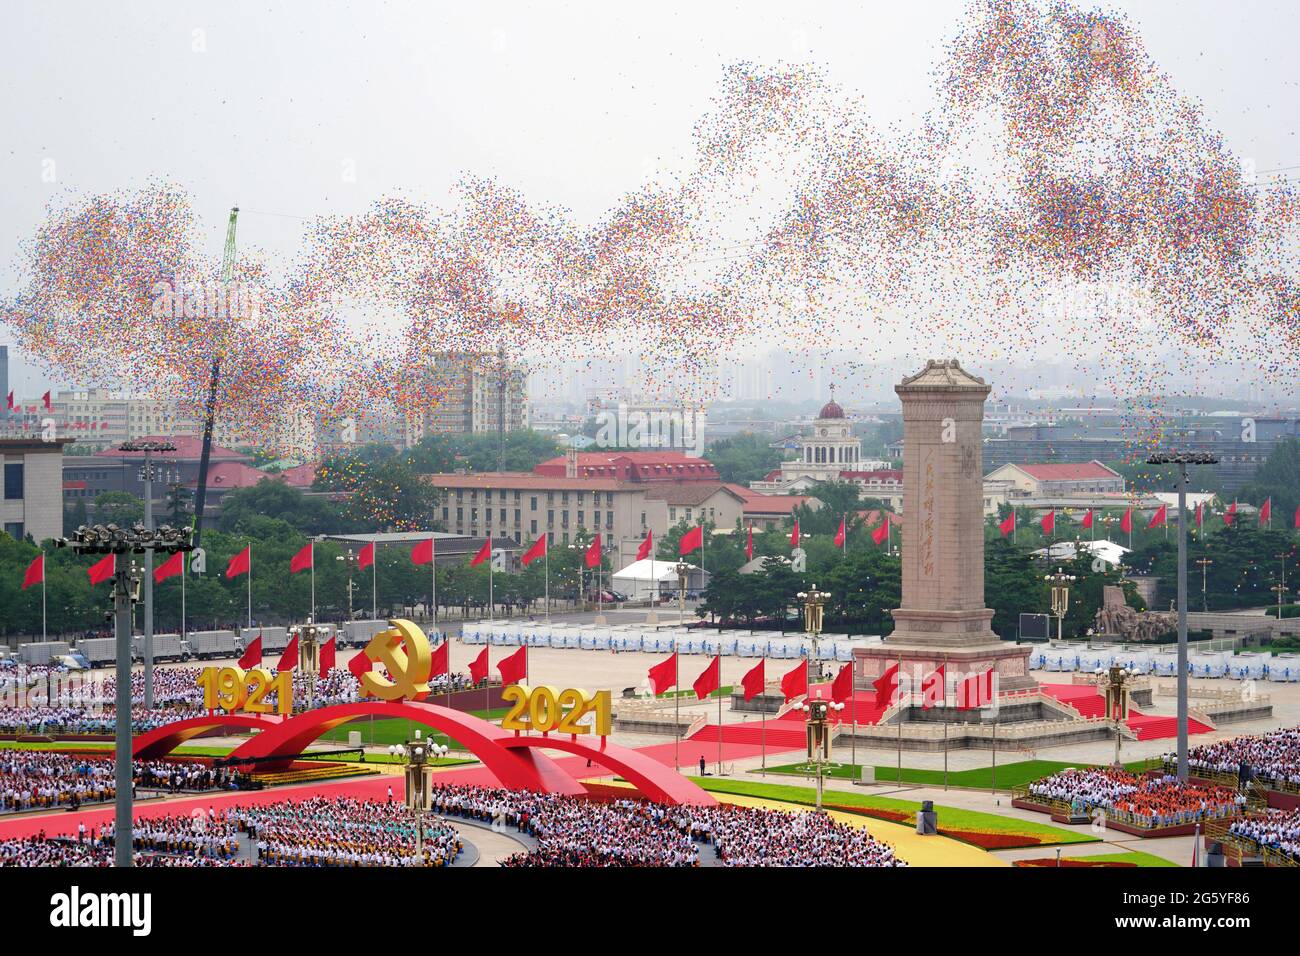 Peking, China. Juli 2021. Ballons werden während einer Zeremonie anlässlich des 100. Jahrestages der Kommunistischen Partei Chinas (KPCh) am 1. Juli 2021 auf dem Tian'anmen-Platz in Peking, der Hauptstadt Chinas, freigelassen. Quelle: Li Gang/Xinhua/Alamy Live News Stockfoto